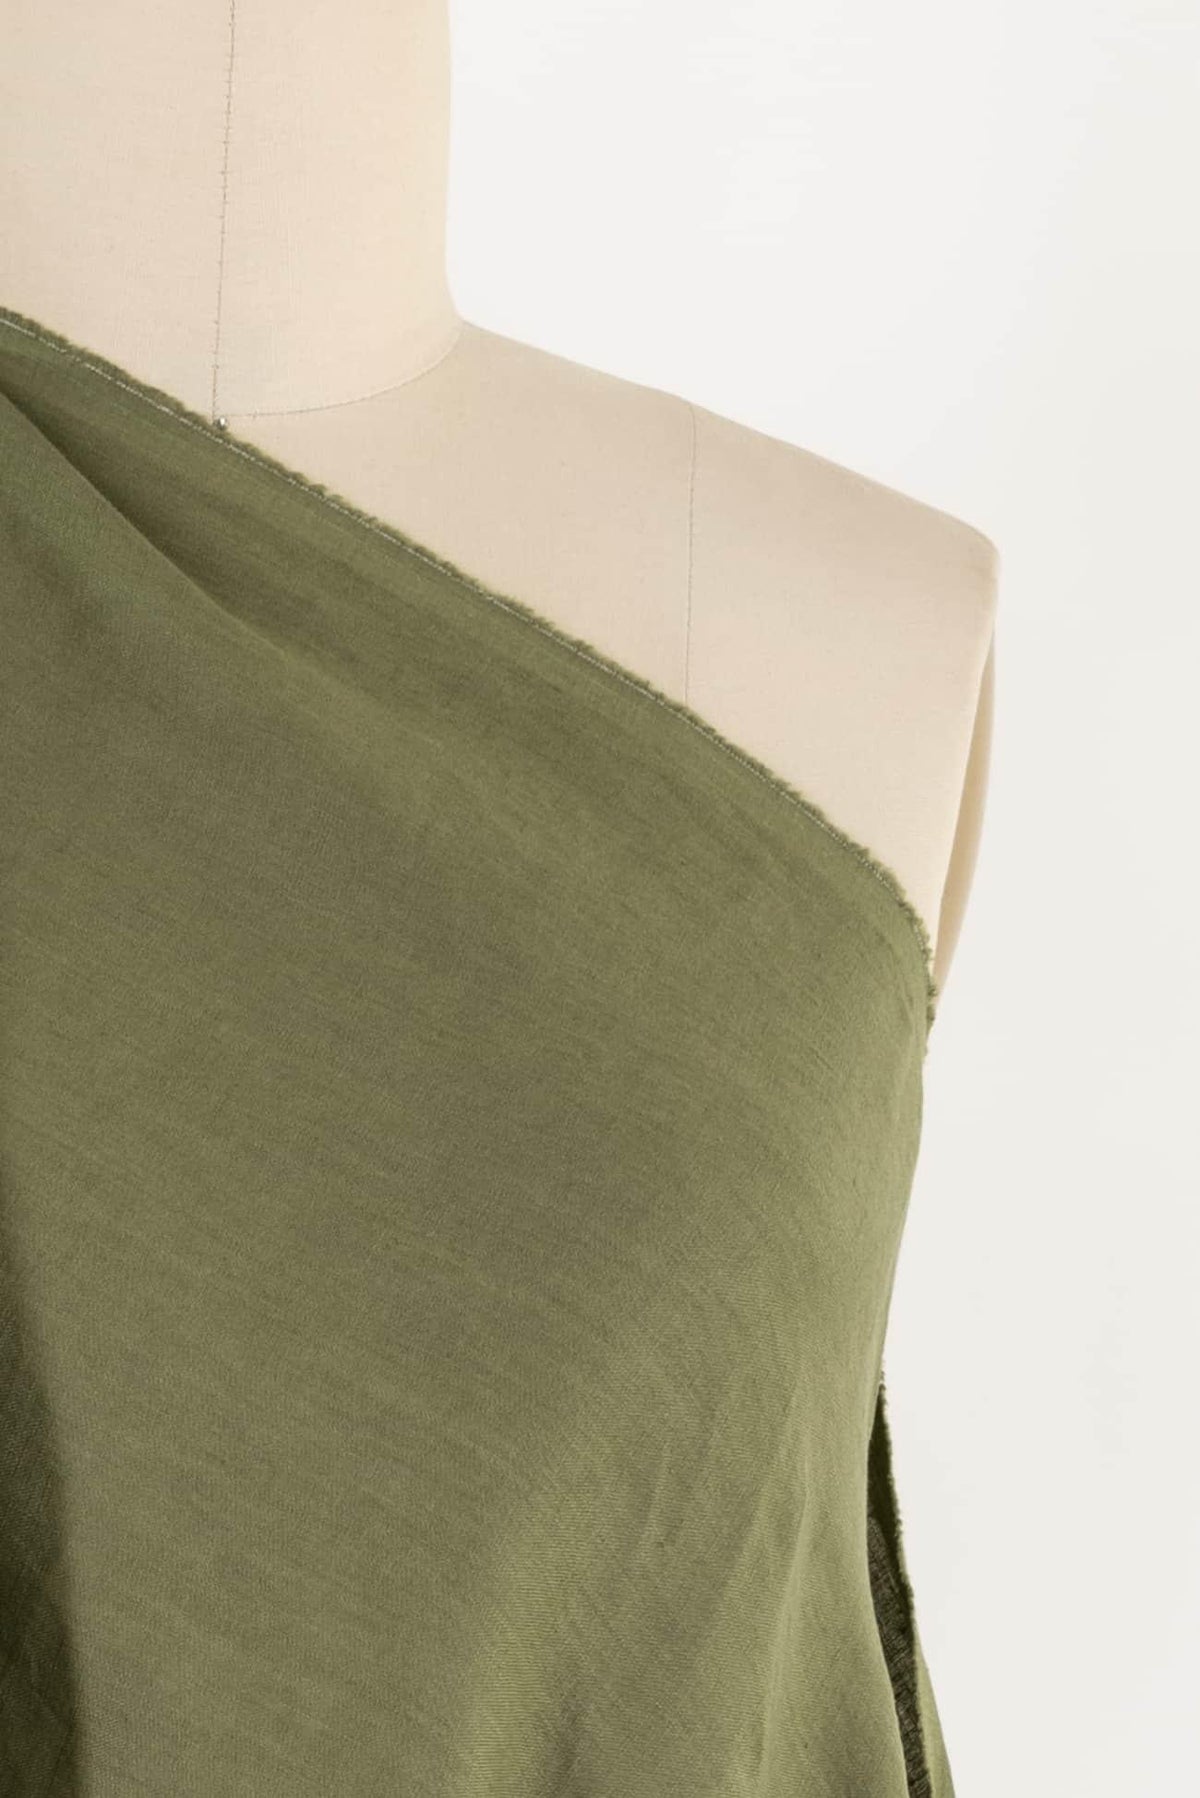 Juniper Linen Woven - Marcy Tilton Fabrics